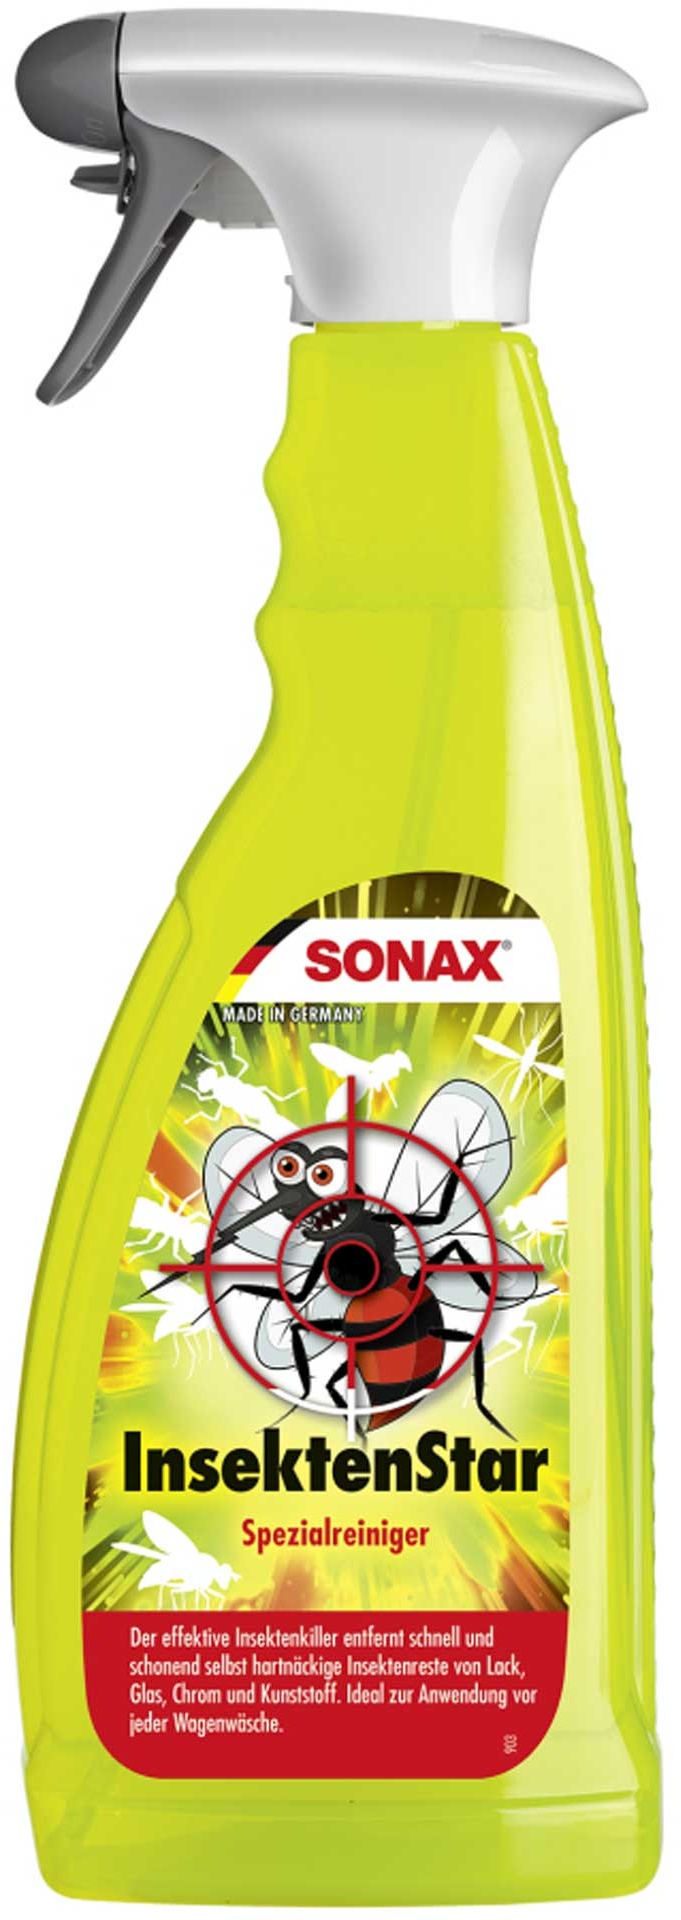 Sonax Insektenentferner Insektenstar 750 ml Sprühflasche 02334000